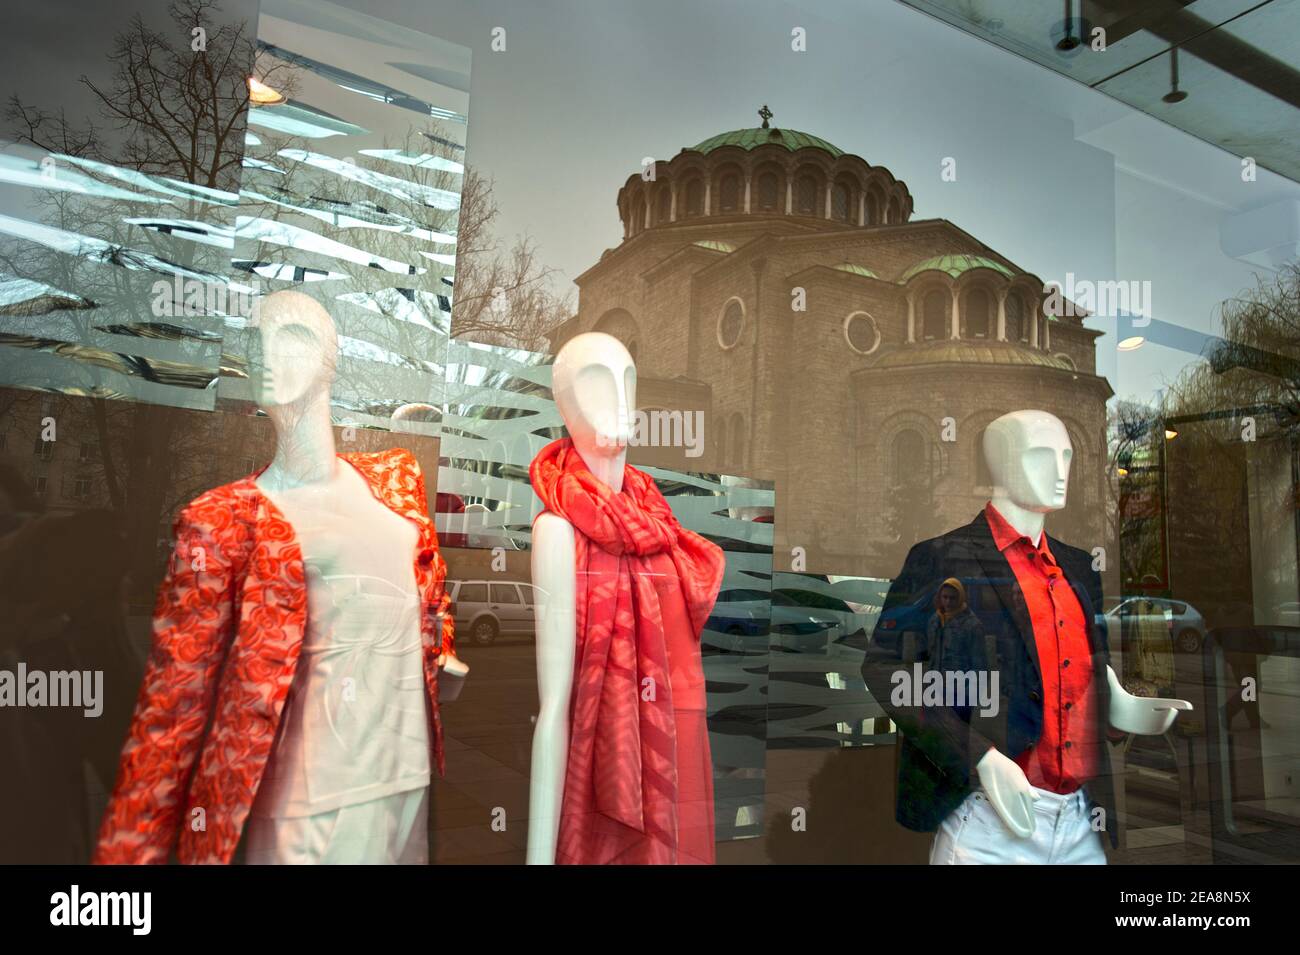 Vitrine de magasin de mode avec réflexion de scène de rue, Sofia, Bulgarie Banque D'Images